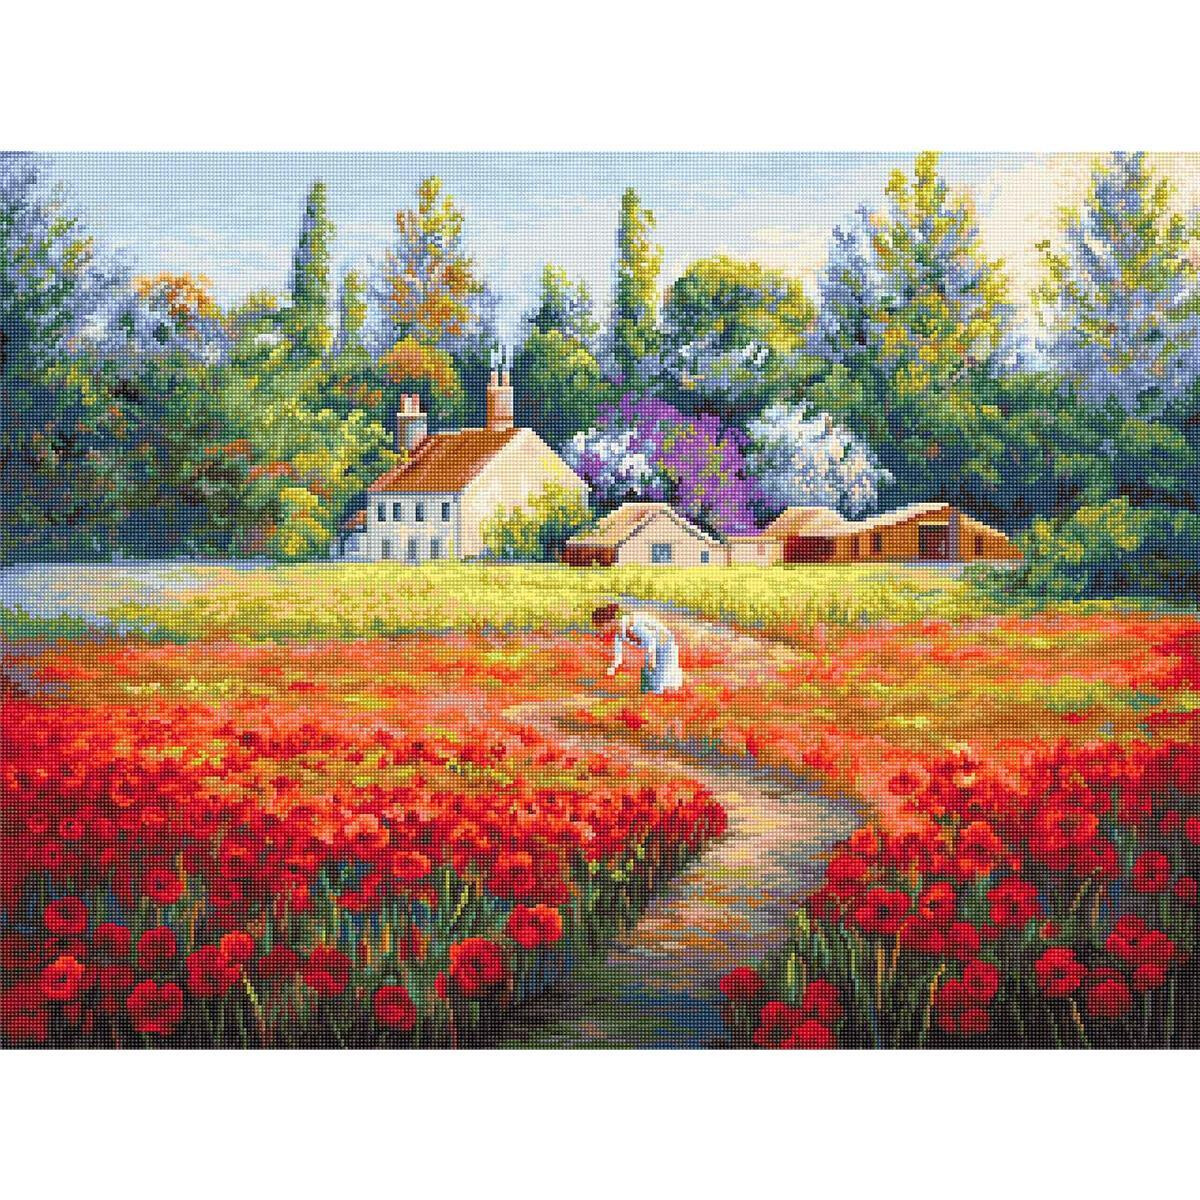 Un cuadro pintado muestra una animada escena rural con...